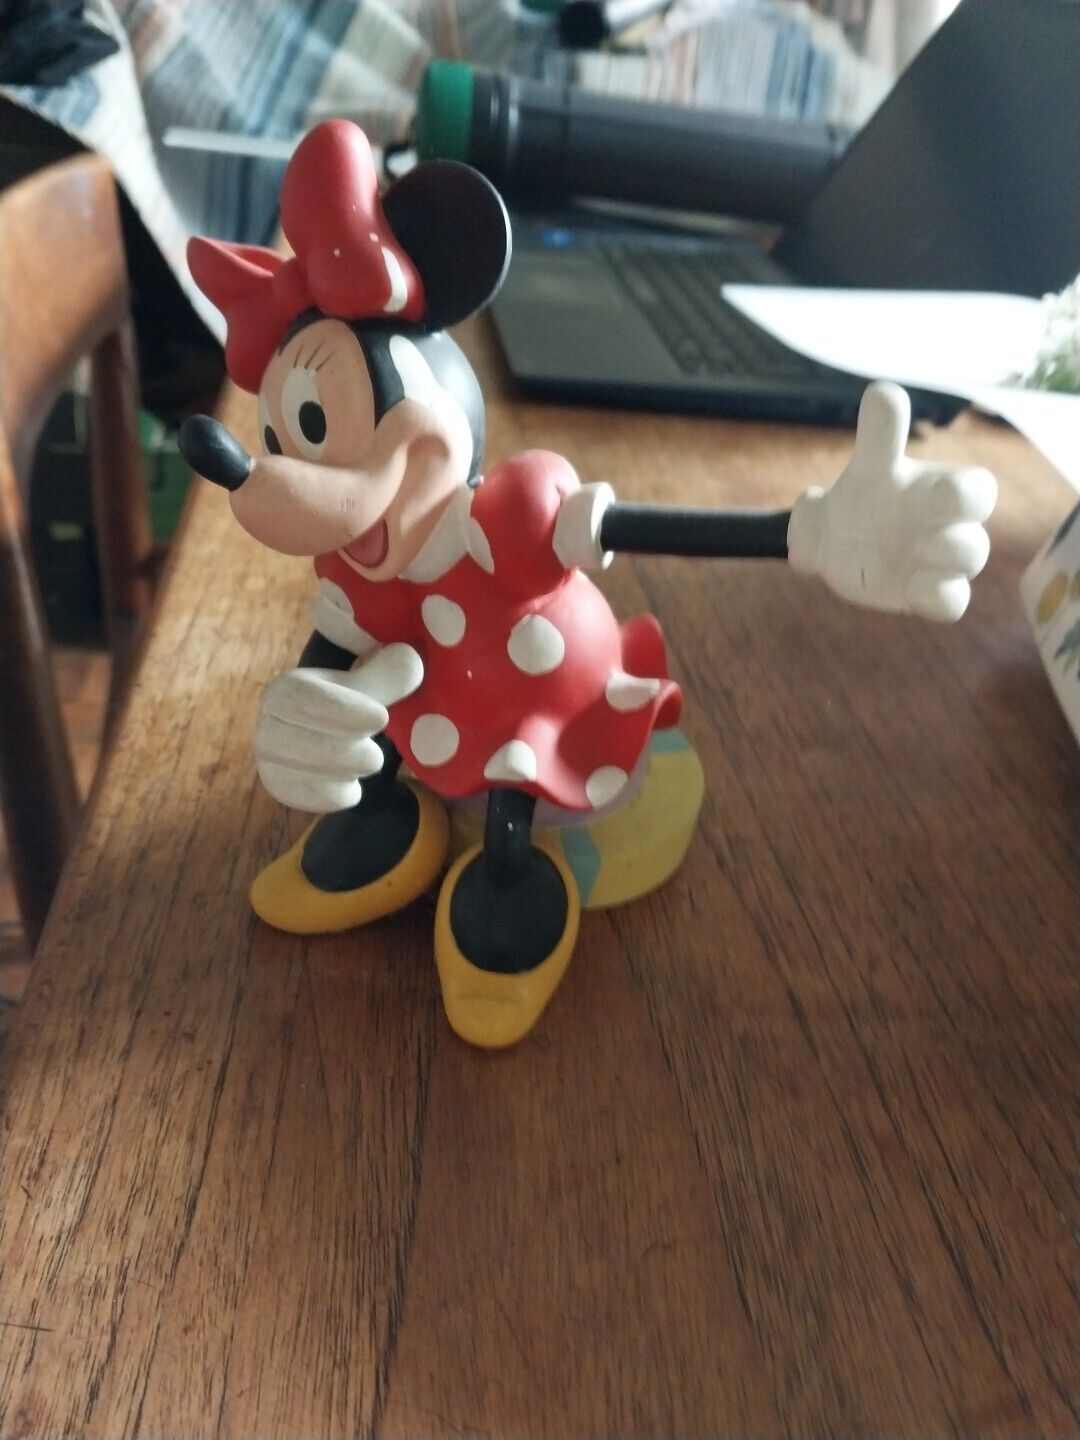 Mini Mouse Figurine Seated